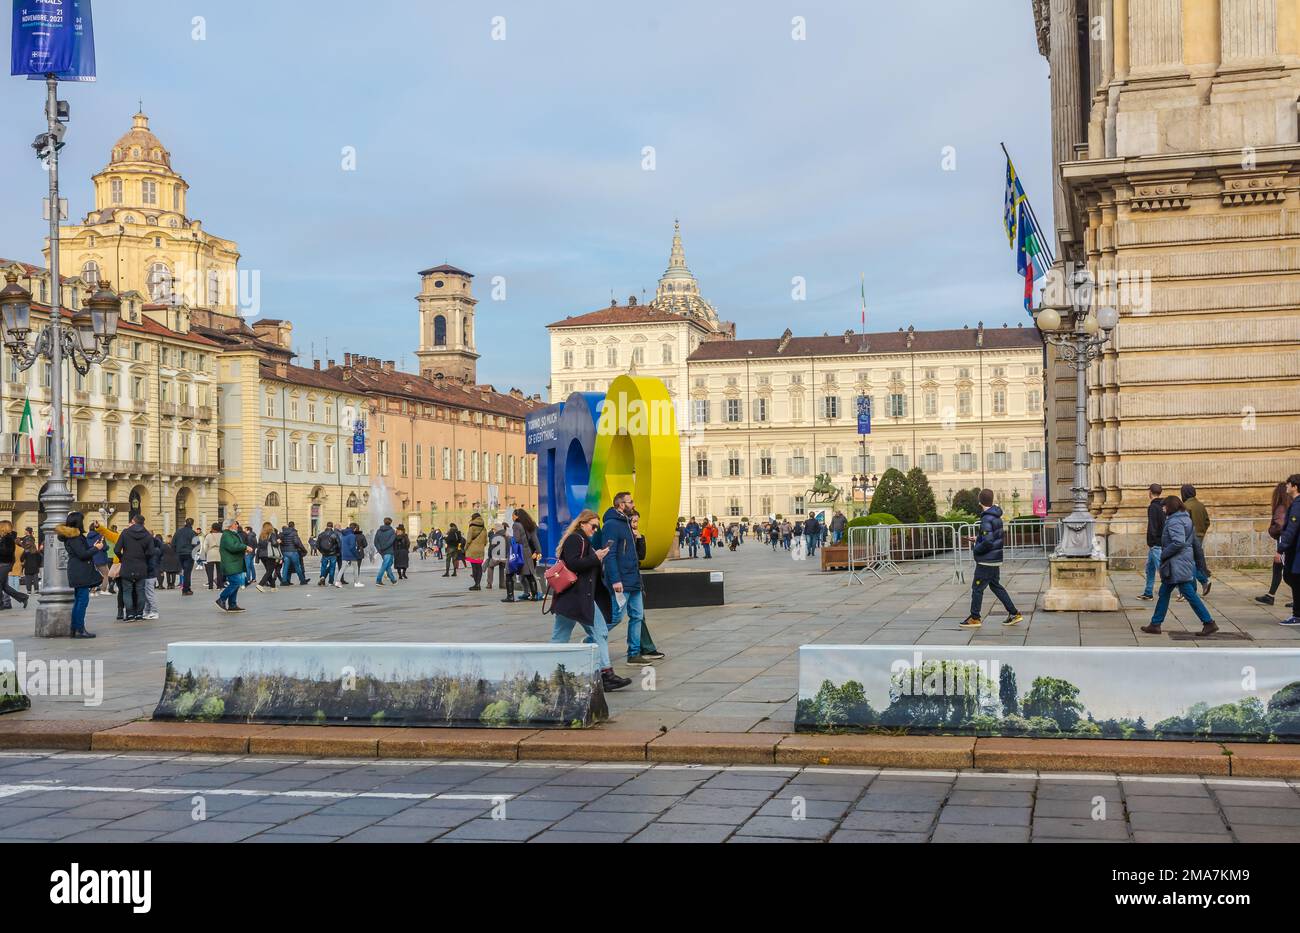 Piazza del Castello di Torino con Palazzo reale. Centro storico di Torino, Piemonte nel nord Italia, Europa Foto Stock